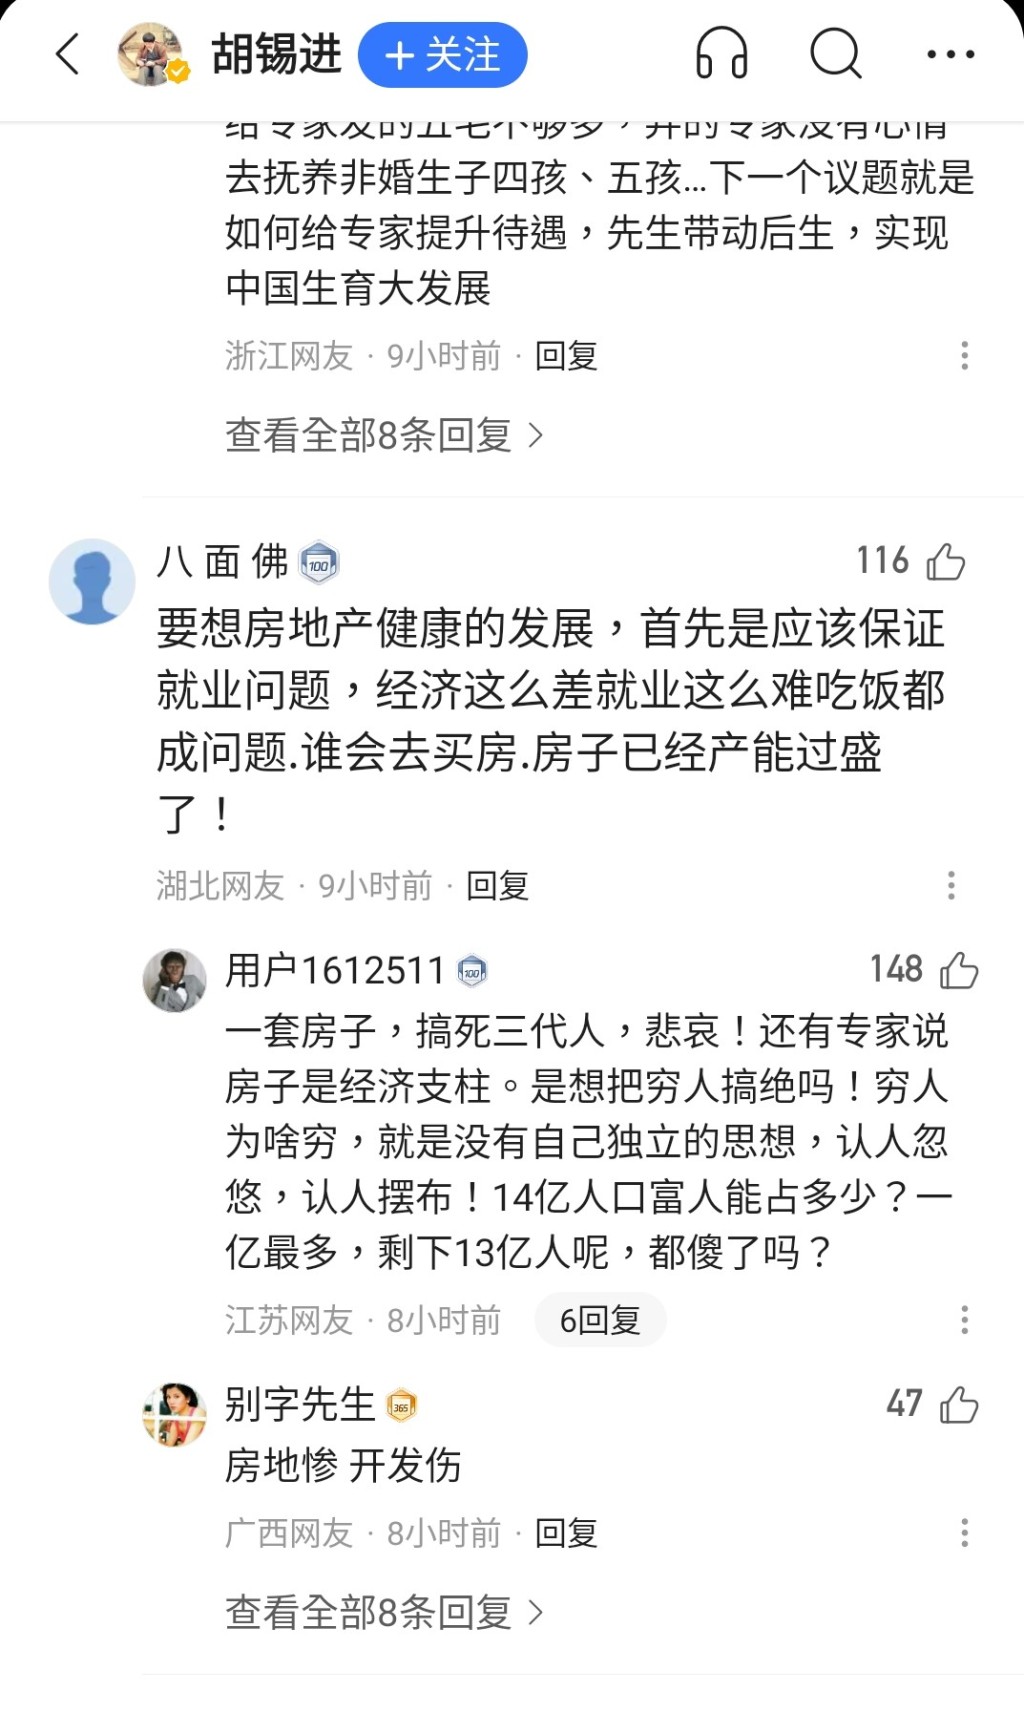 有网民认为，中国政府应先解决失业问题。